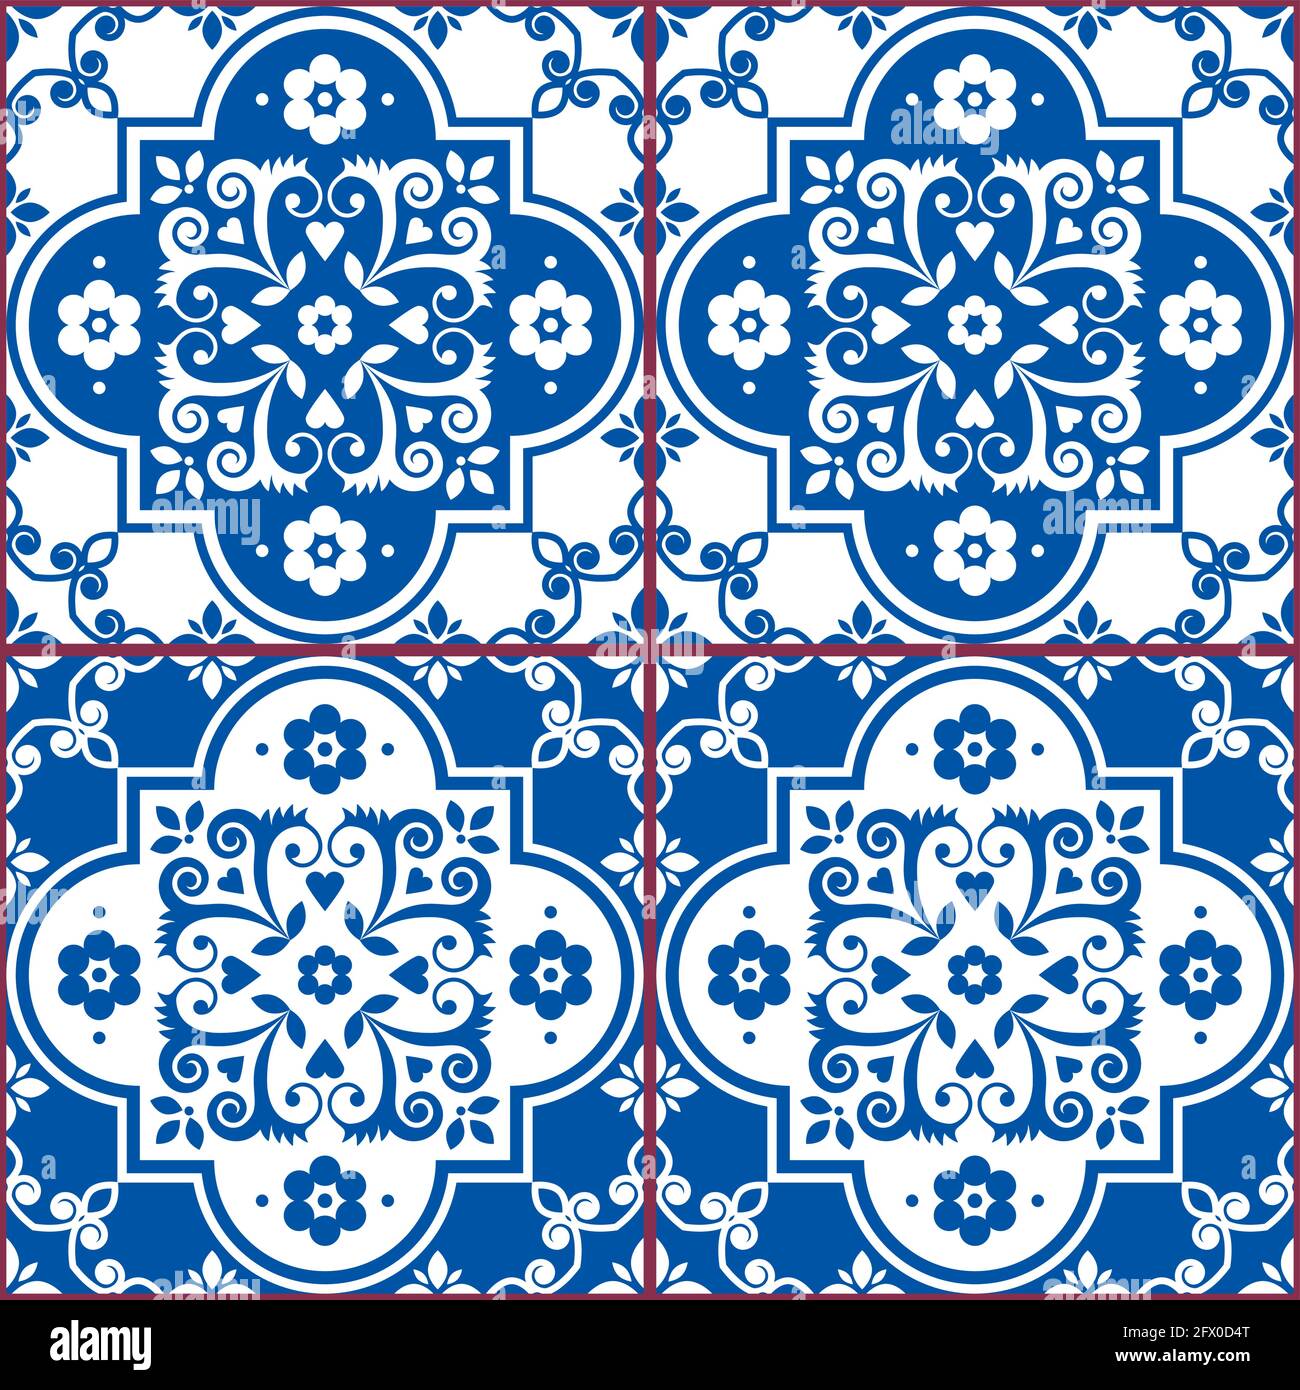 Azulejo azulejos sin costuras patrón vectorial en azul marino y blanco, diseño floral tradicional inspirado en el arte de azulejos de Lisboa, Portugal Ilustración del Vector